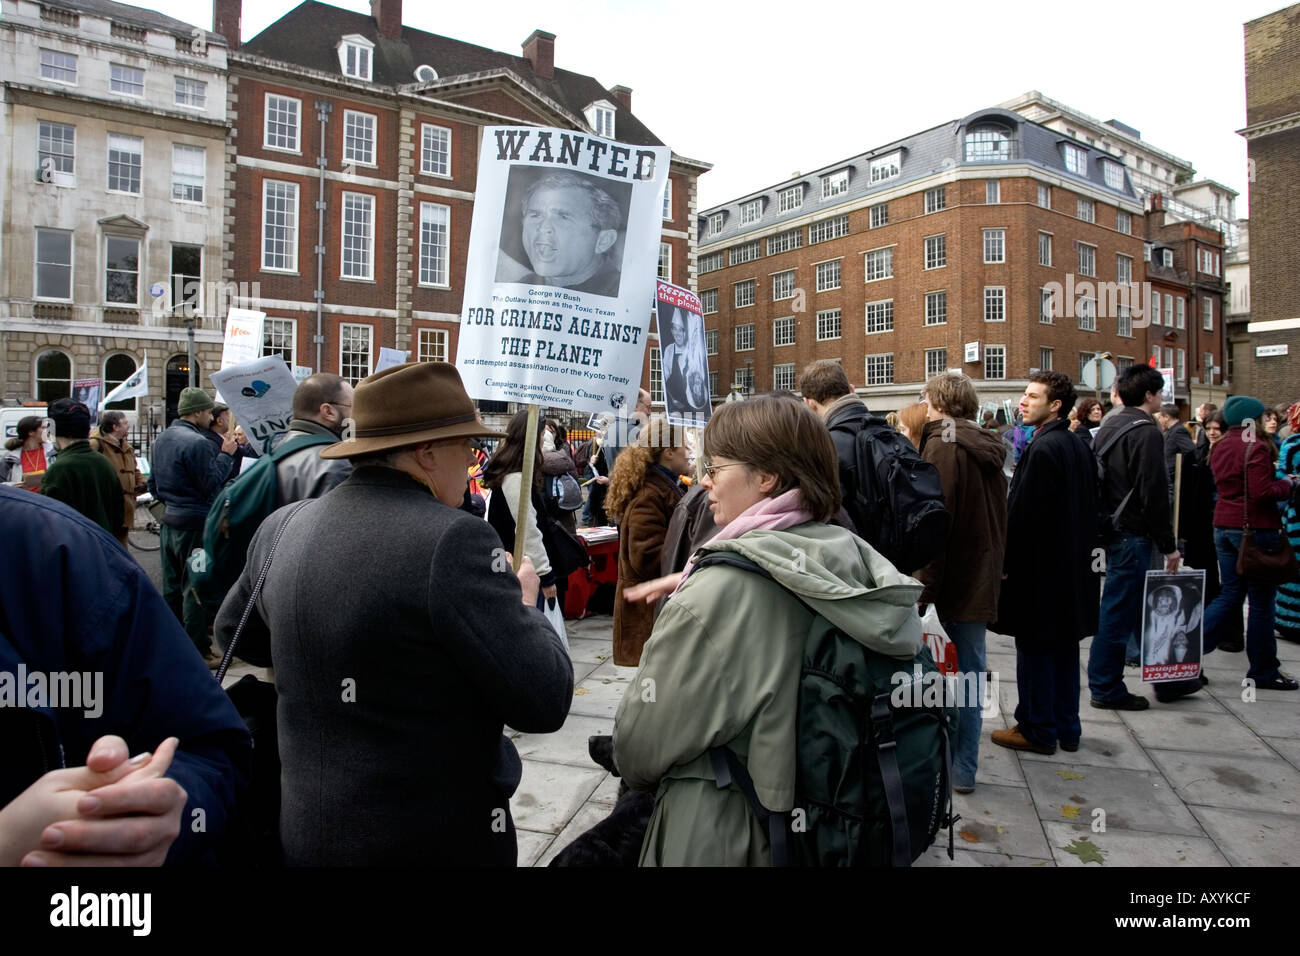 Gli attivisti con striscioni dicendo voleva che George Bush per crimini contro il pianeta sul Cambiamento Climatico marzo il 3 dicembre a Londra Foto Stock